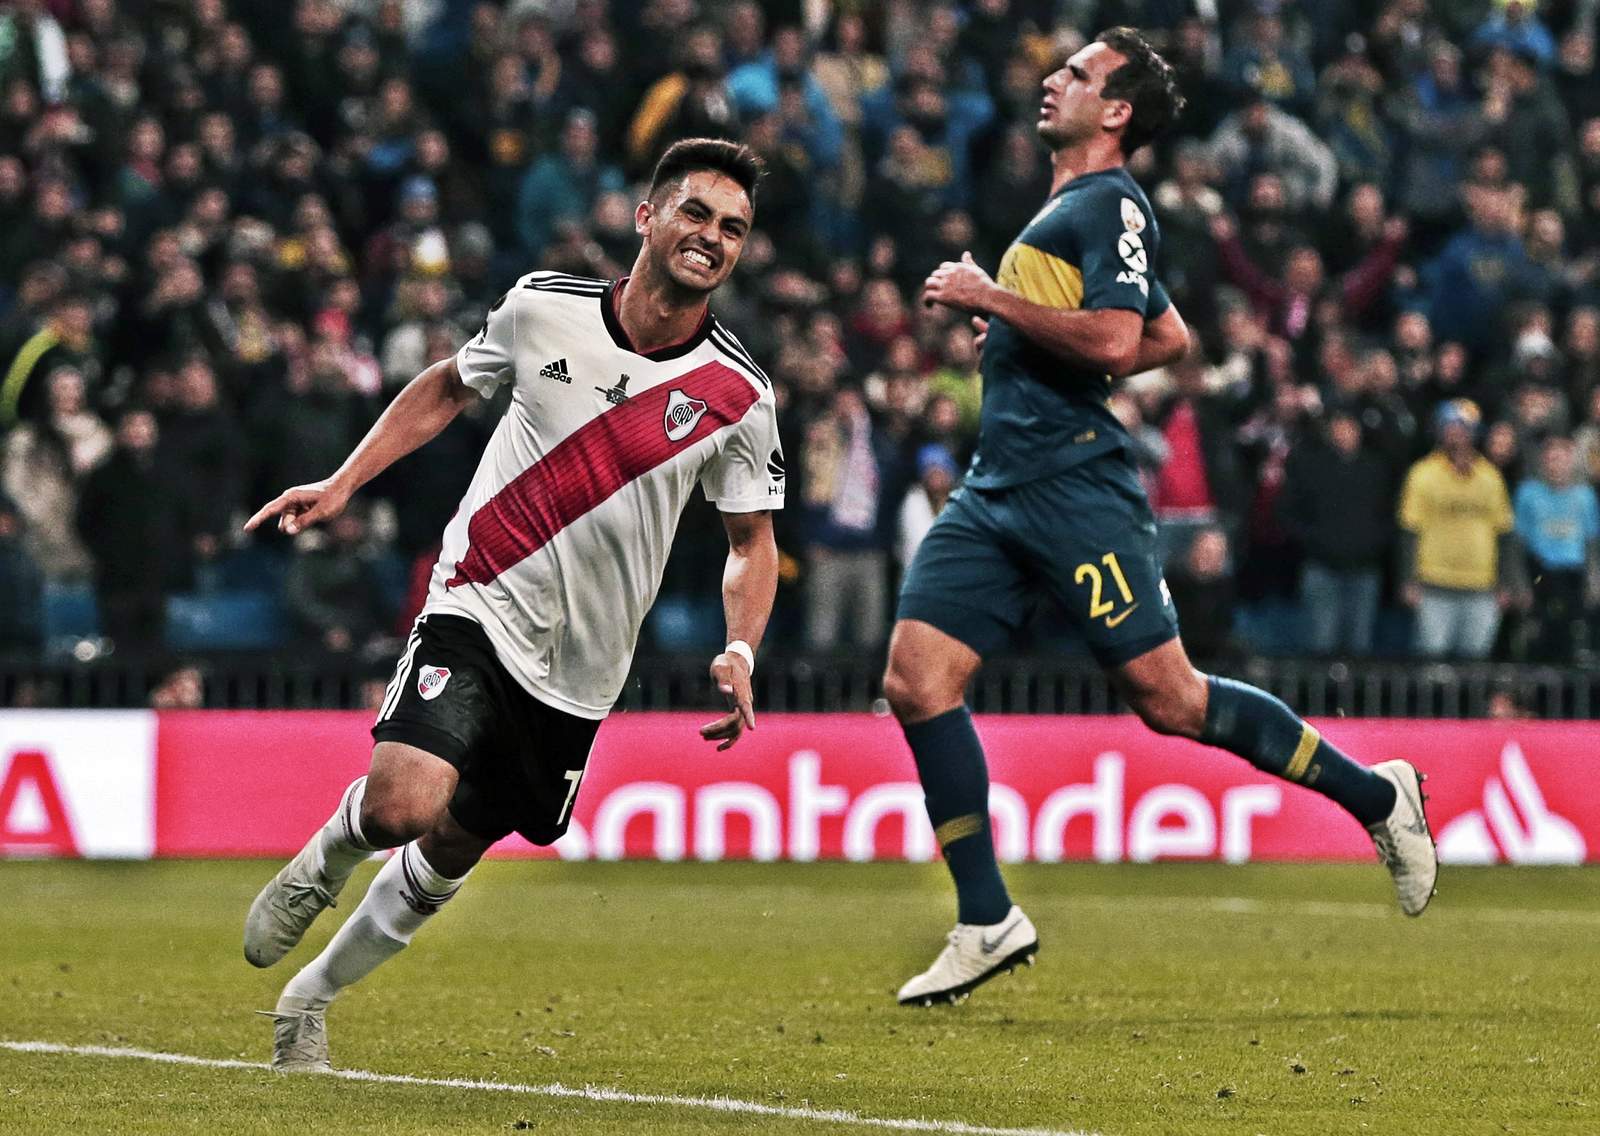 Gonzalo Martínez escapó al final para marcar el tercer gol del River Plate, en una portería que ya no tenía guardián. (AP)